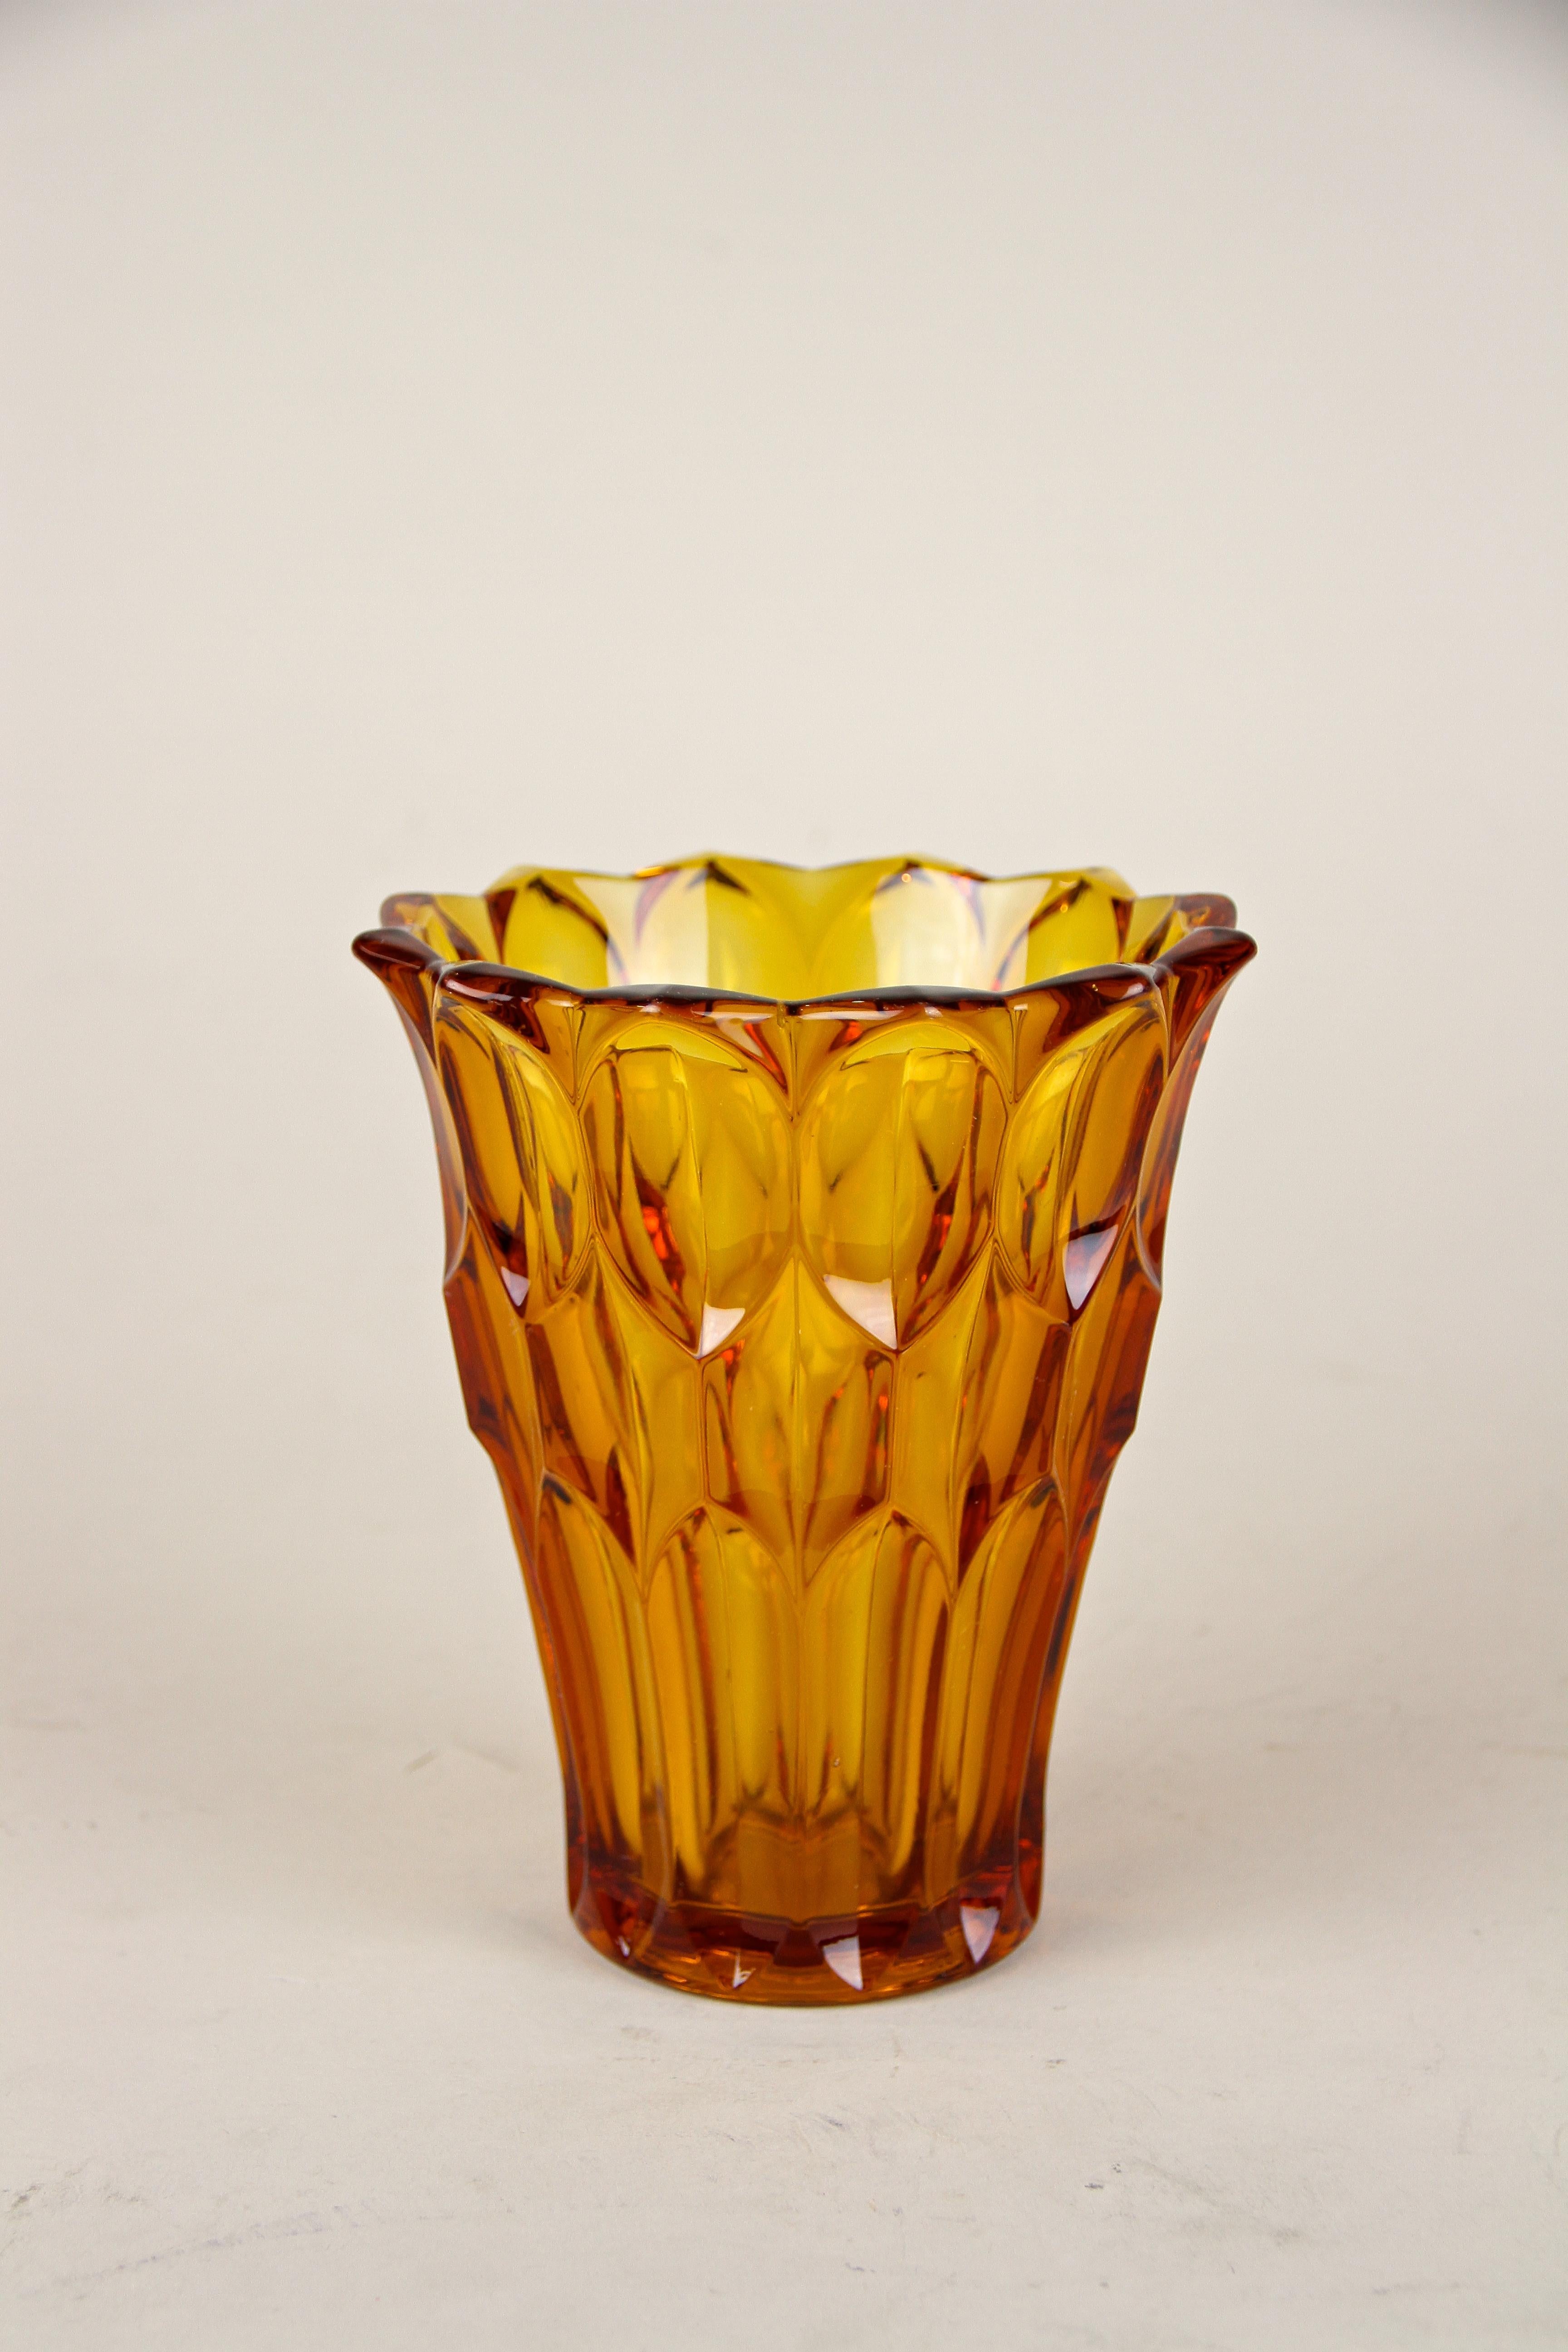 Zarte Glasvase des 20. Jahrhunderts aus der Zeit des Art déco, um 1920 in Österreich. Die schöne Vase weiß zu überzeugen, ein toll gestaltetes Stück Glas, verziert mit einem speziellen Schliff, der je nach Lichteinfall fantastische Muster bildet.